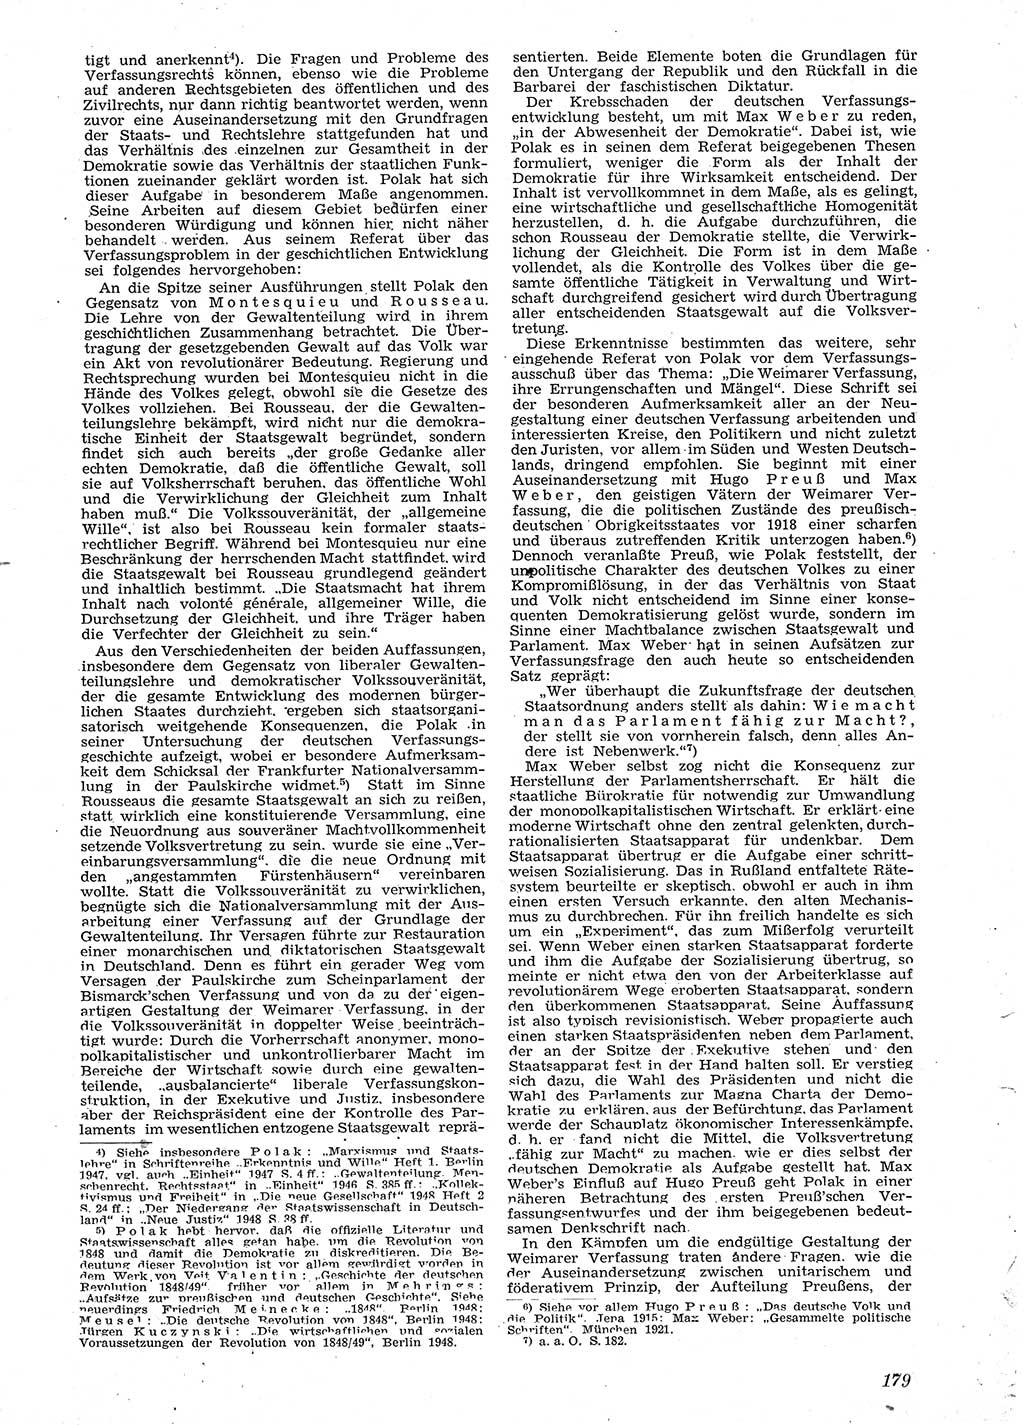 Neue Justiz (NJ), Zeitschrift für Recht und Rechtswissenschaft [Sowjetische Besatzungszone (SBZ) Deutschland], 2. Jahrgang 1948, Seite 179 (NJ SBZ Dtl. 1948, S. 179)